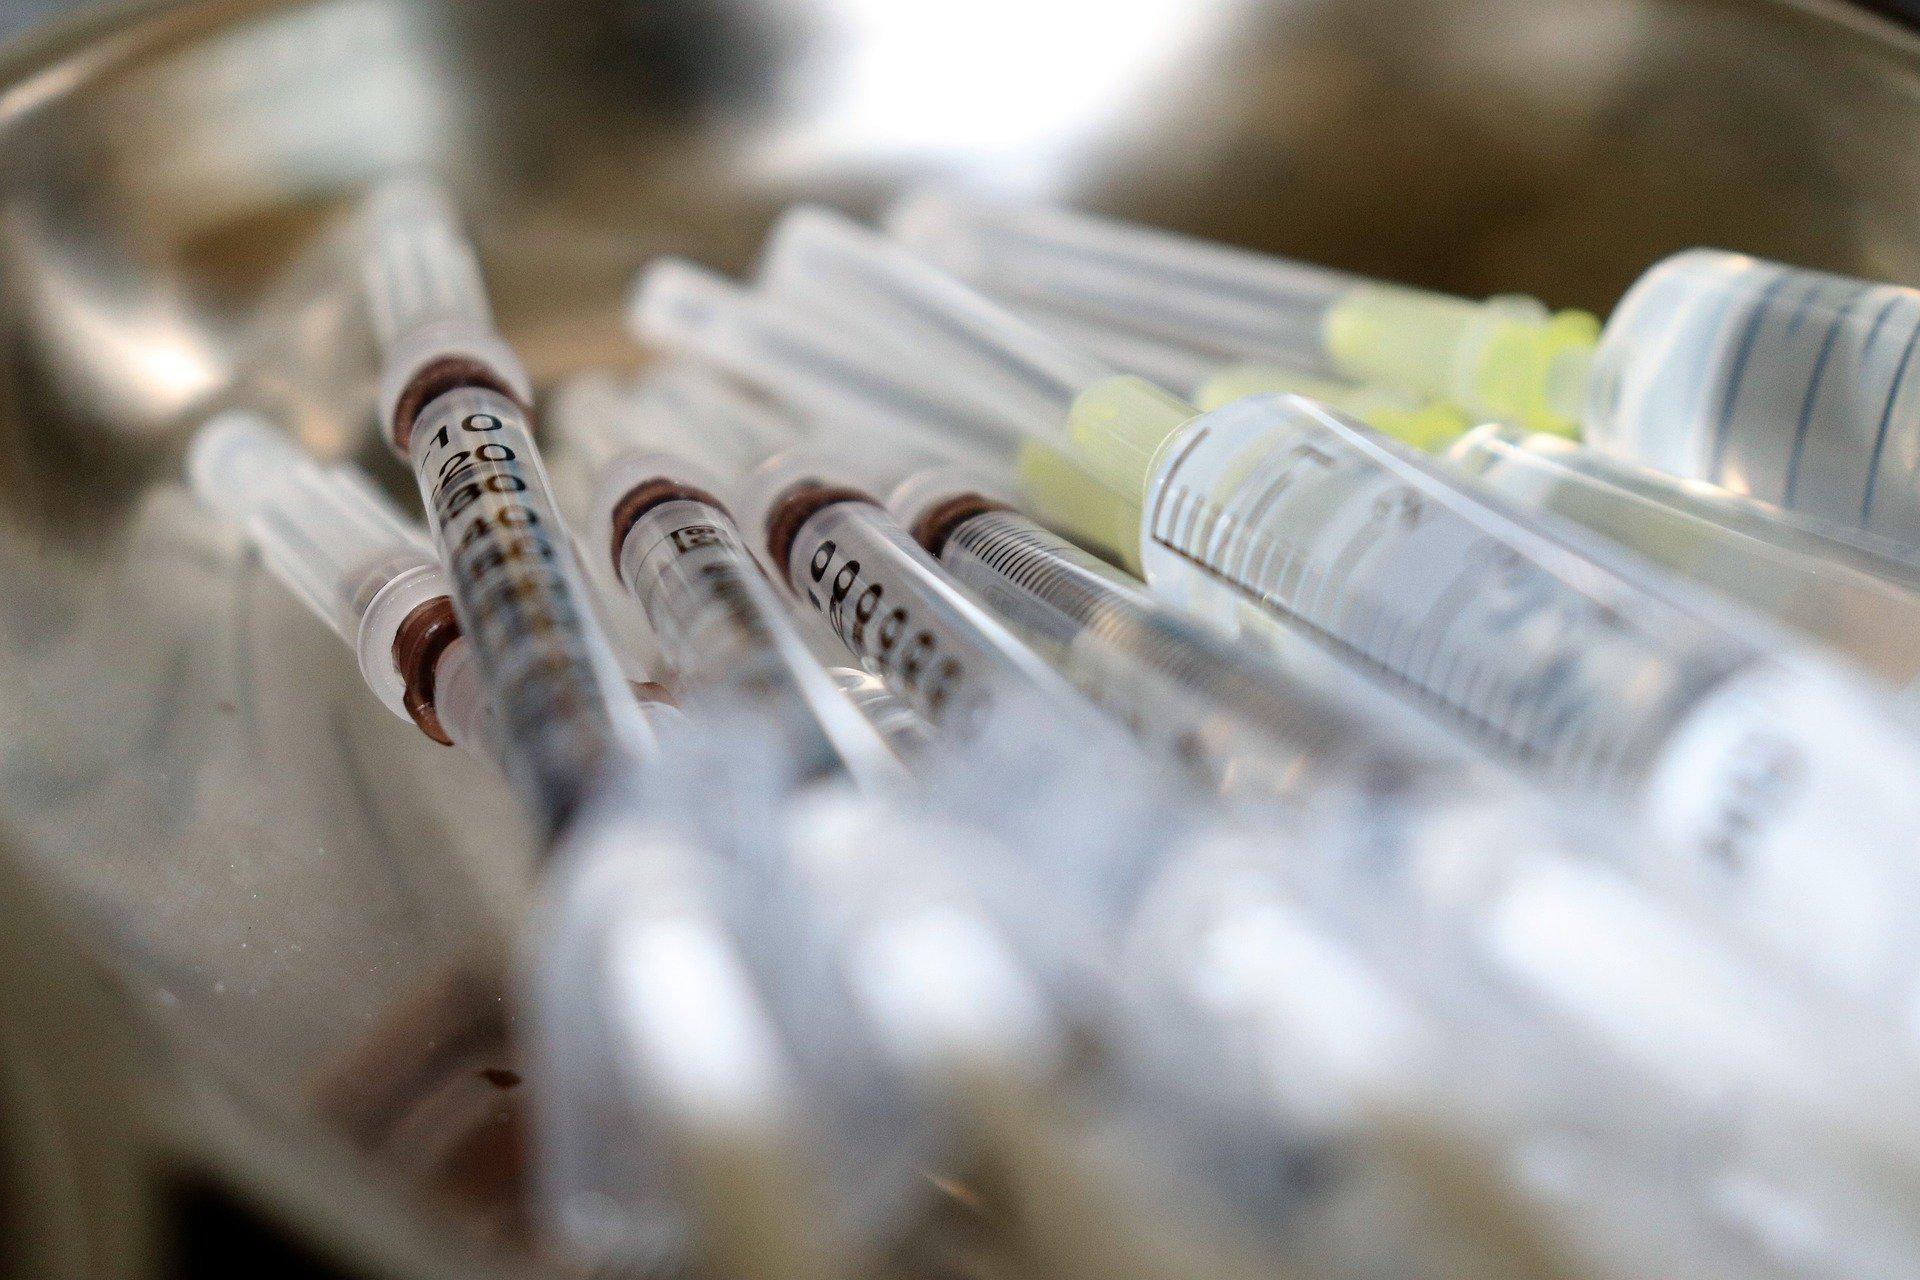 Регистрация второй российской вакцины от коронавируса может пройти в ускоренном порядке